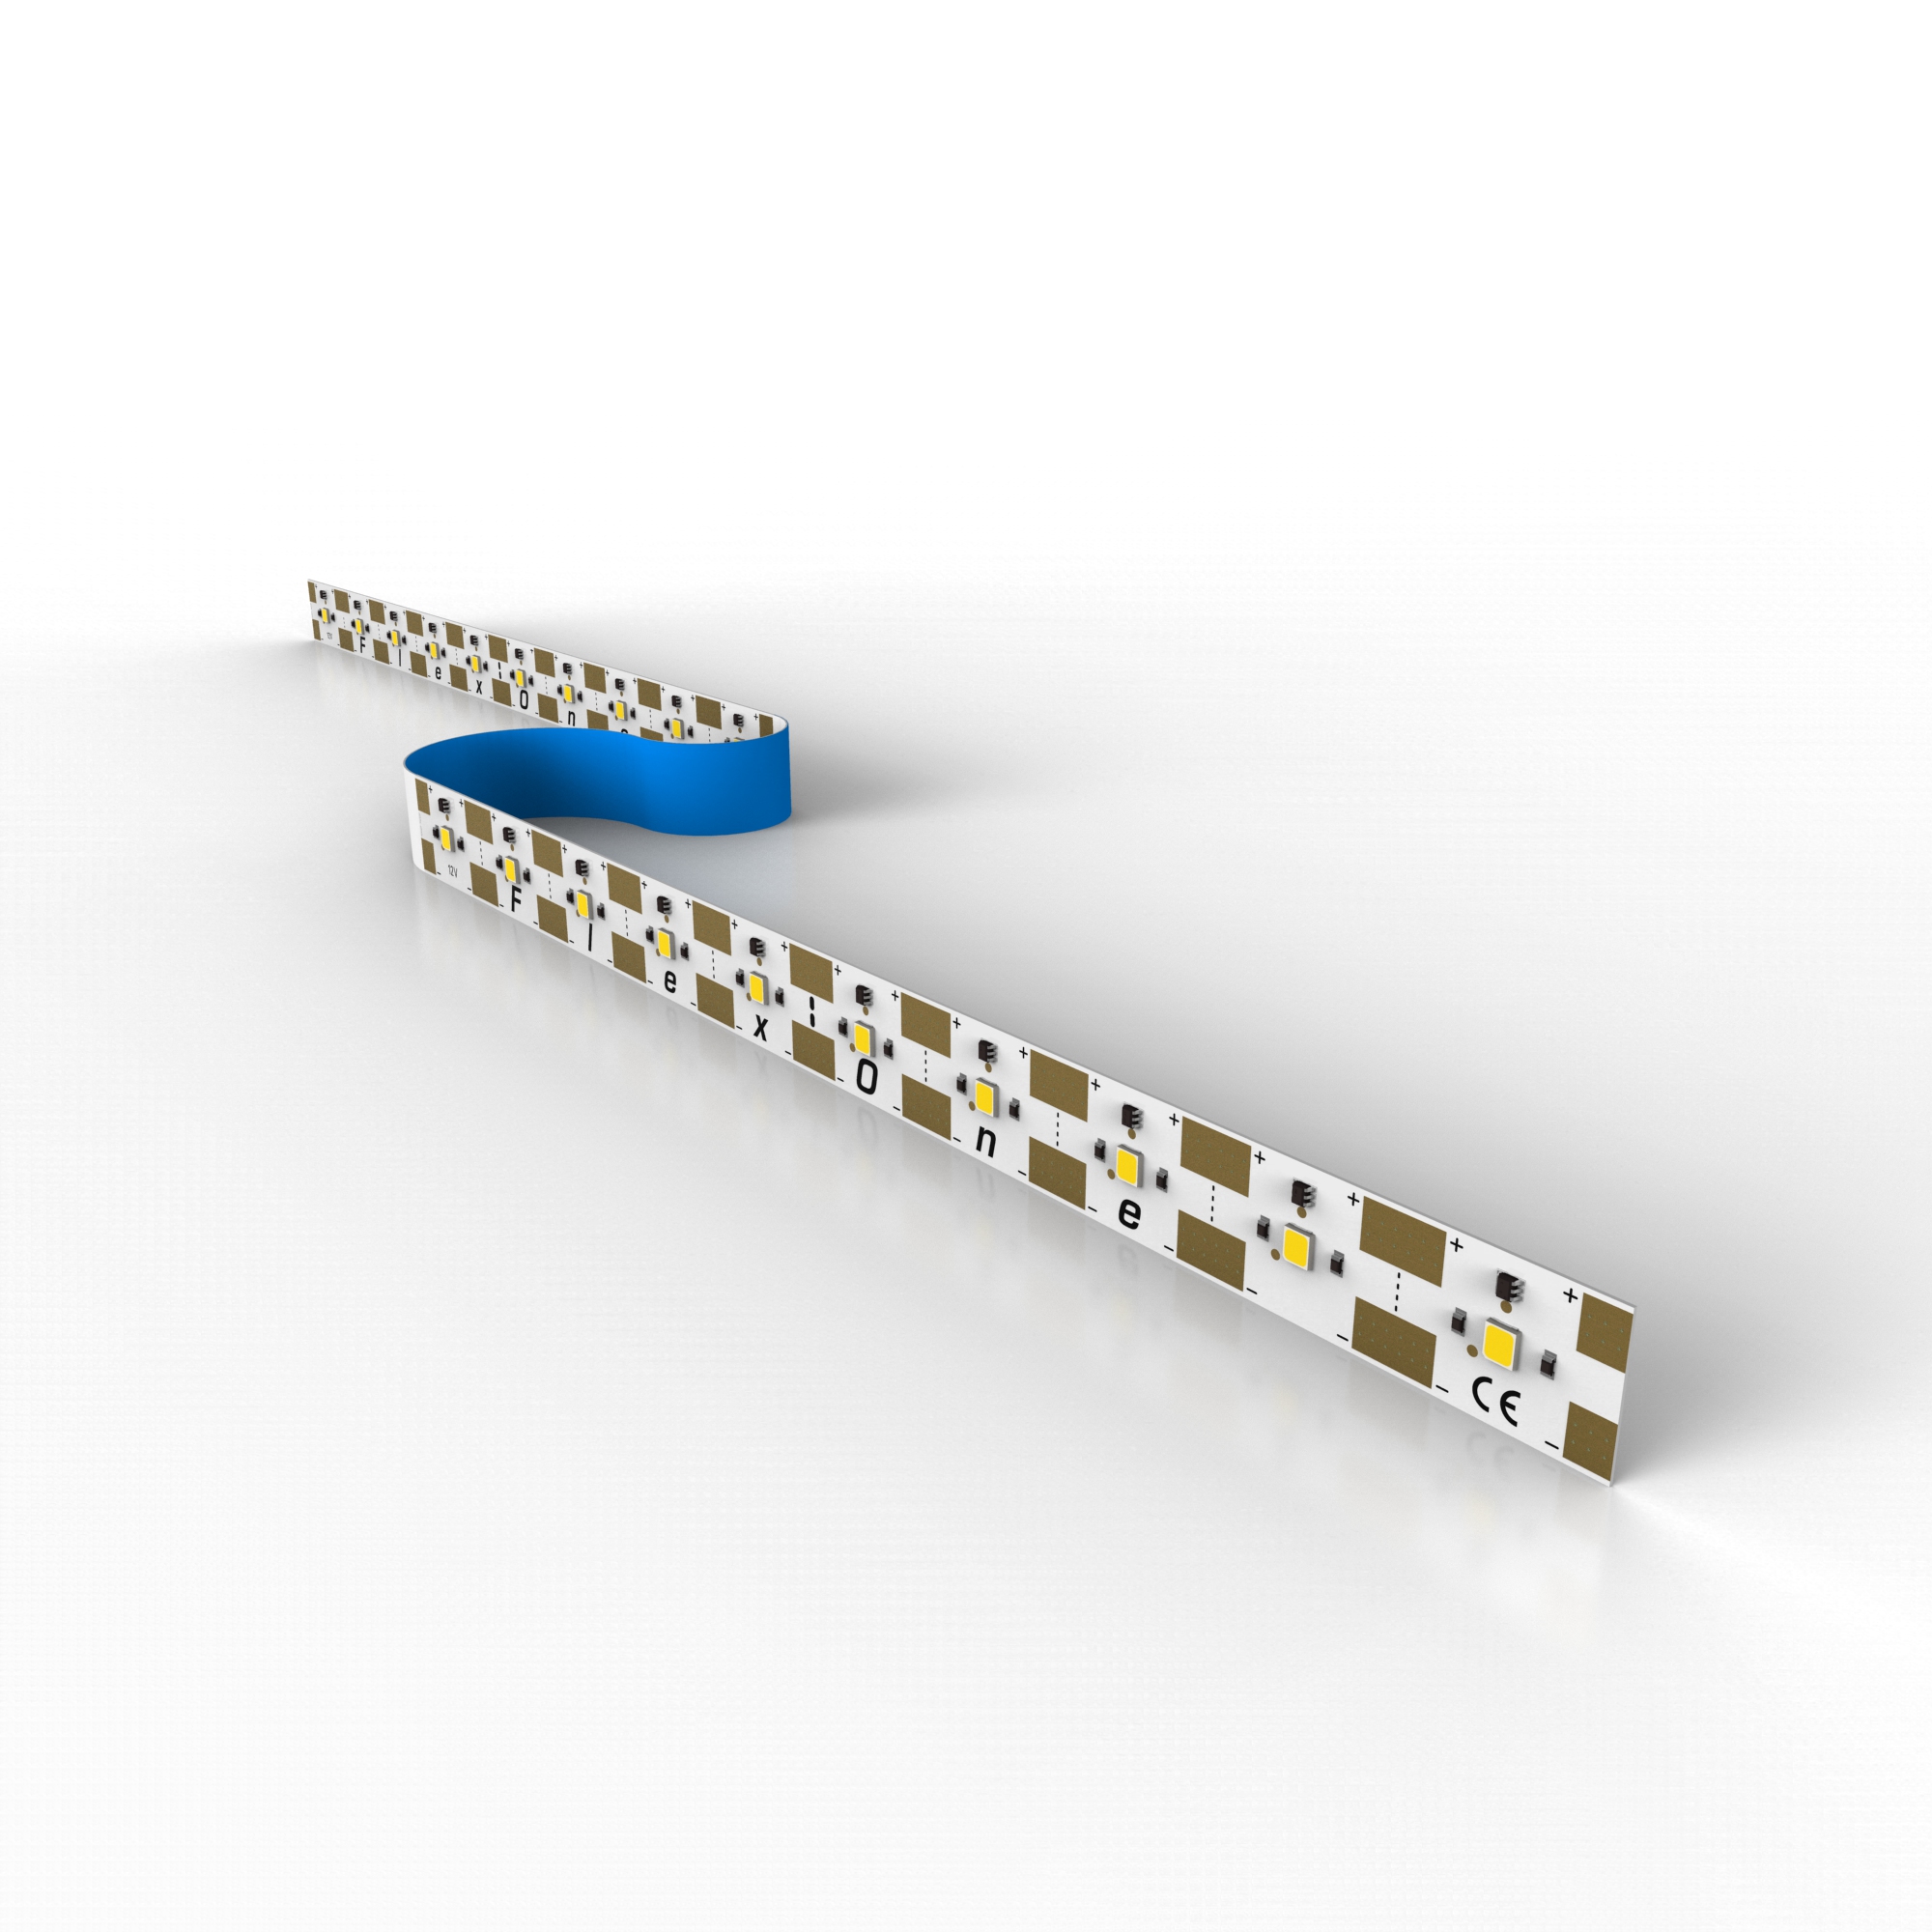 FlexOne3080 Samsung LED Strip warm white 2700K 11825lm 12V 15 LEDs/ft 16ft/5m reel (721lm & 3.4W/ft)